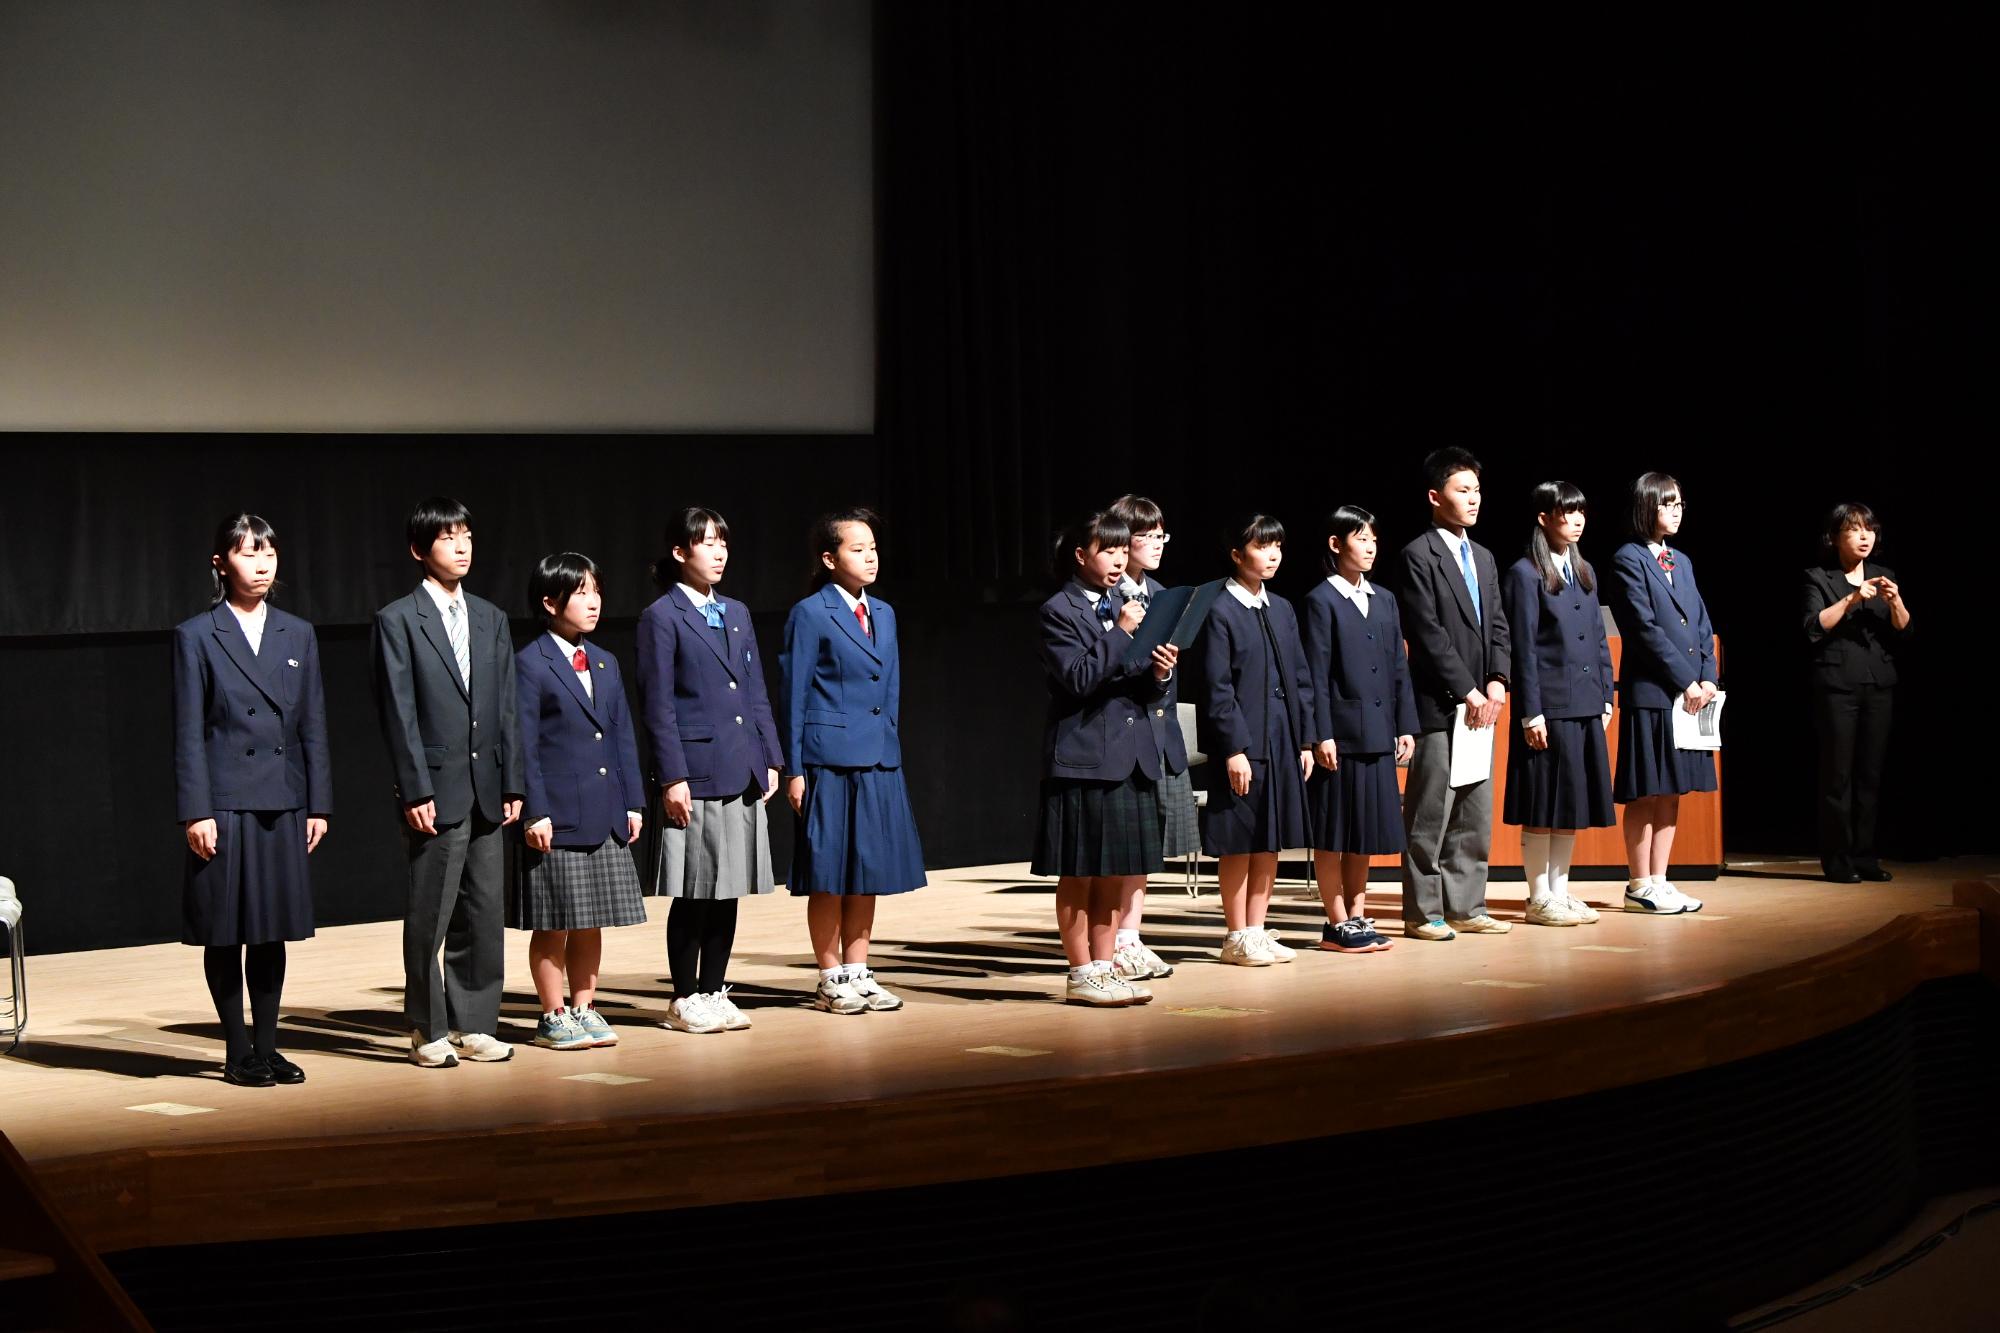 ライトアップされた舞台に並ぶ制服を着た男女学生の写真